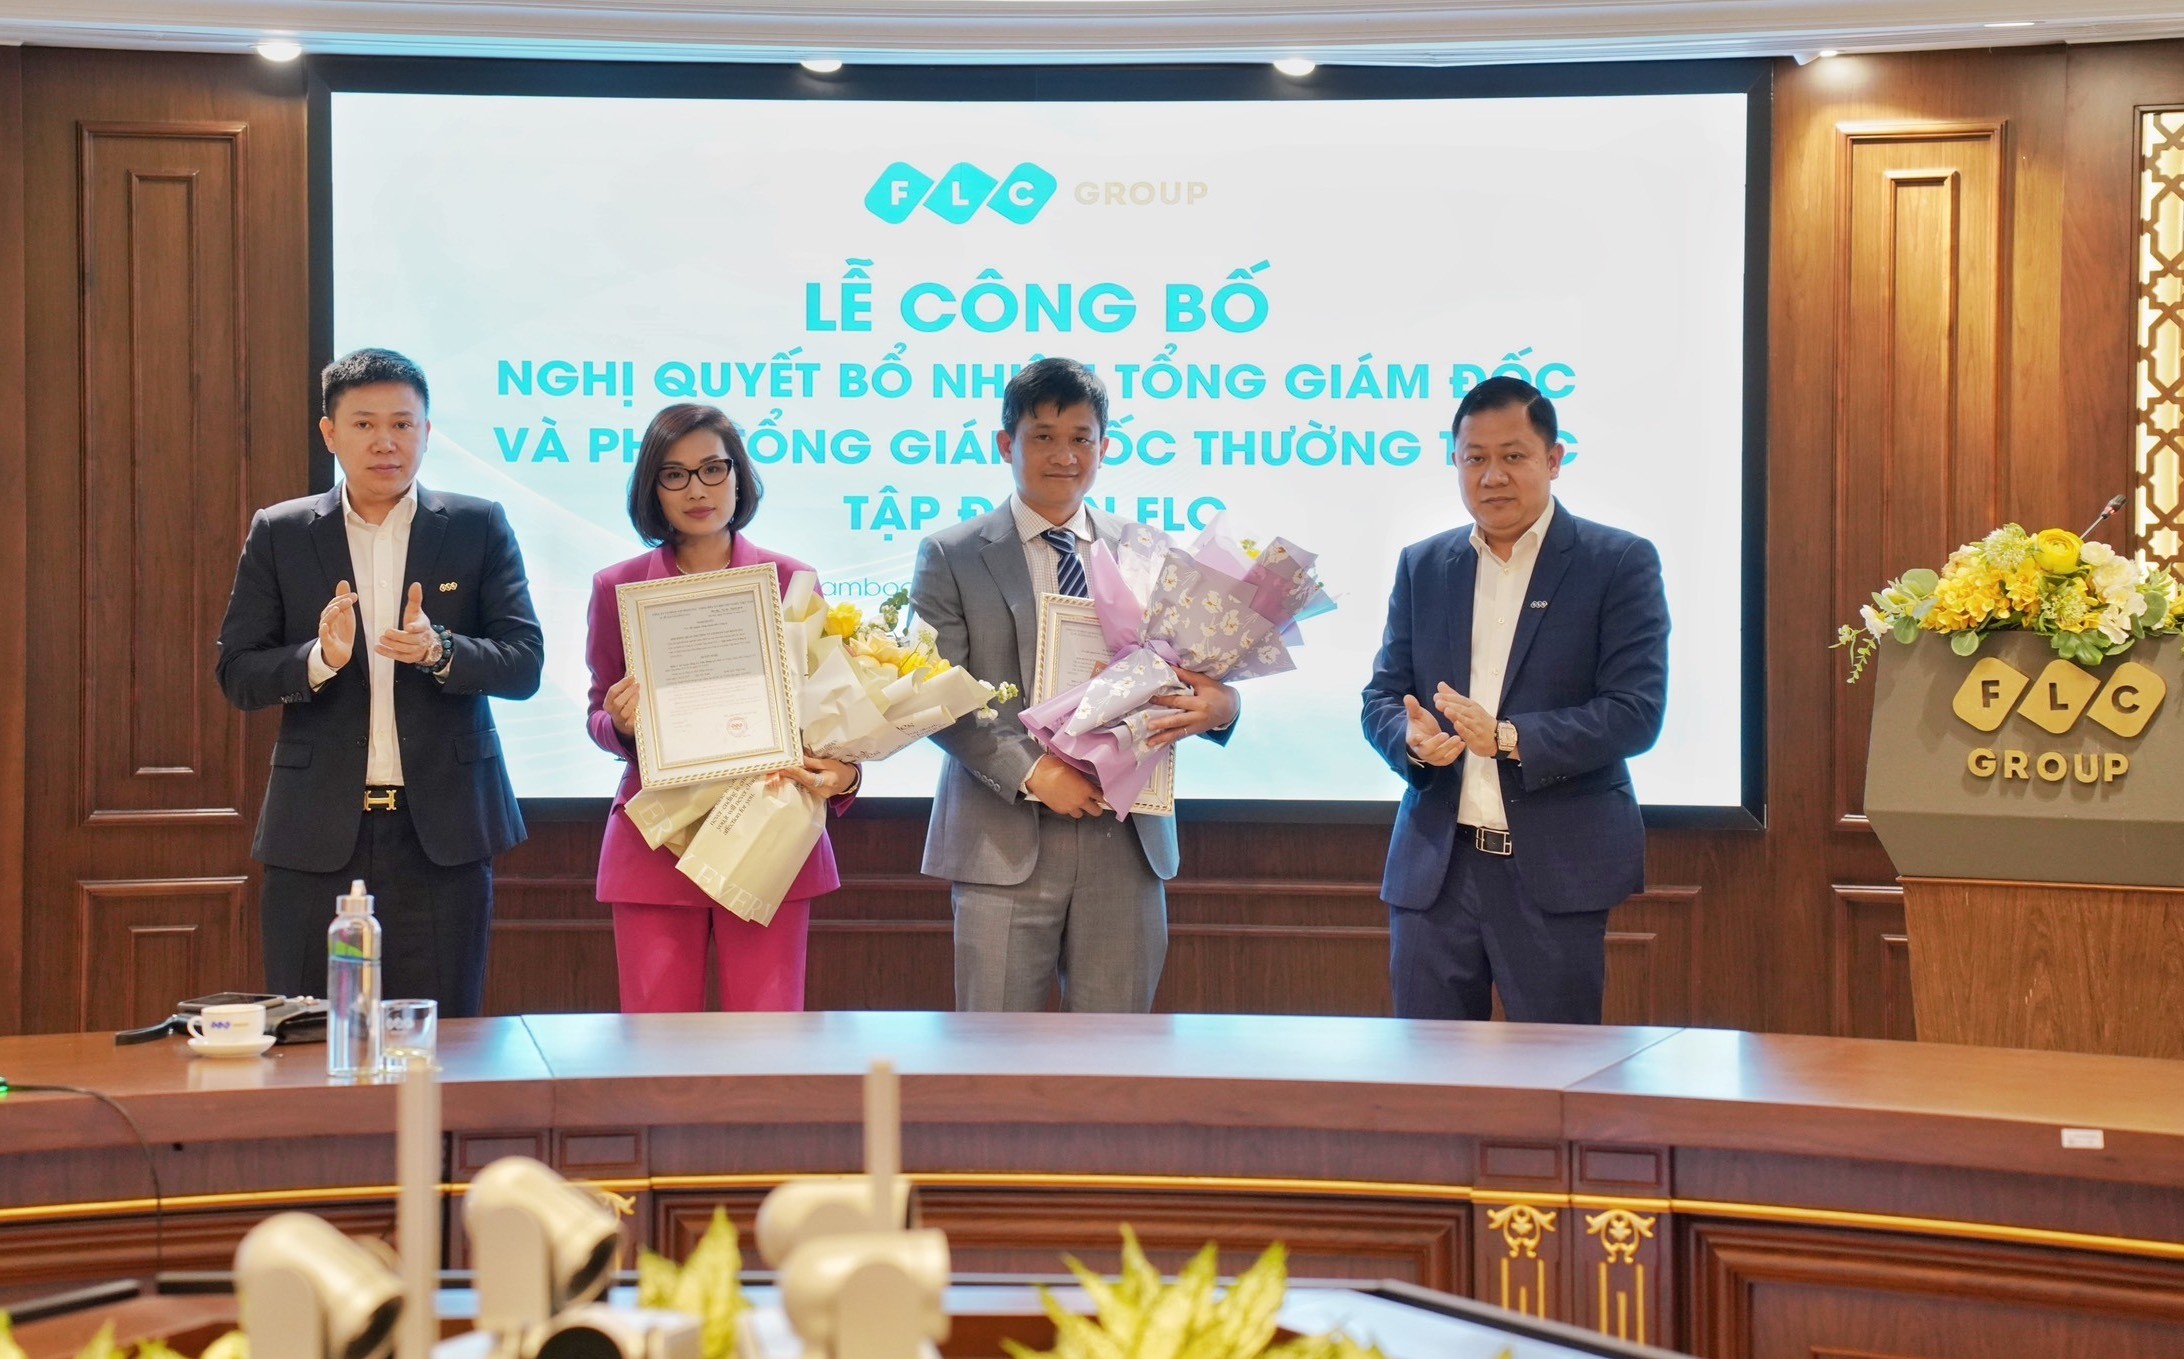 
Tổng giám đốc Lê Tiến Dũng (đứng thứ hai từ phải sang) và Phó Tổng Giám đốc thường trực Trần Thị Hương lên nhận quyết định bổ nhiệm
